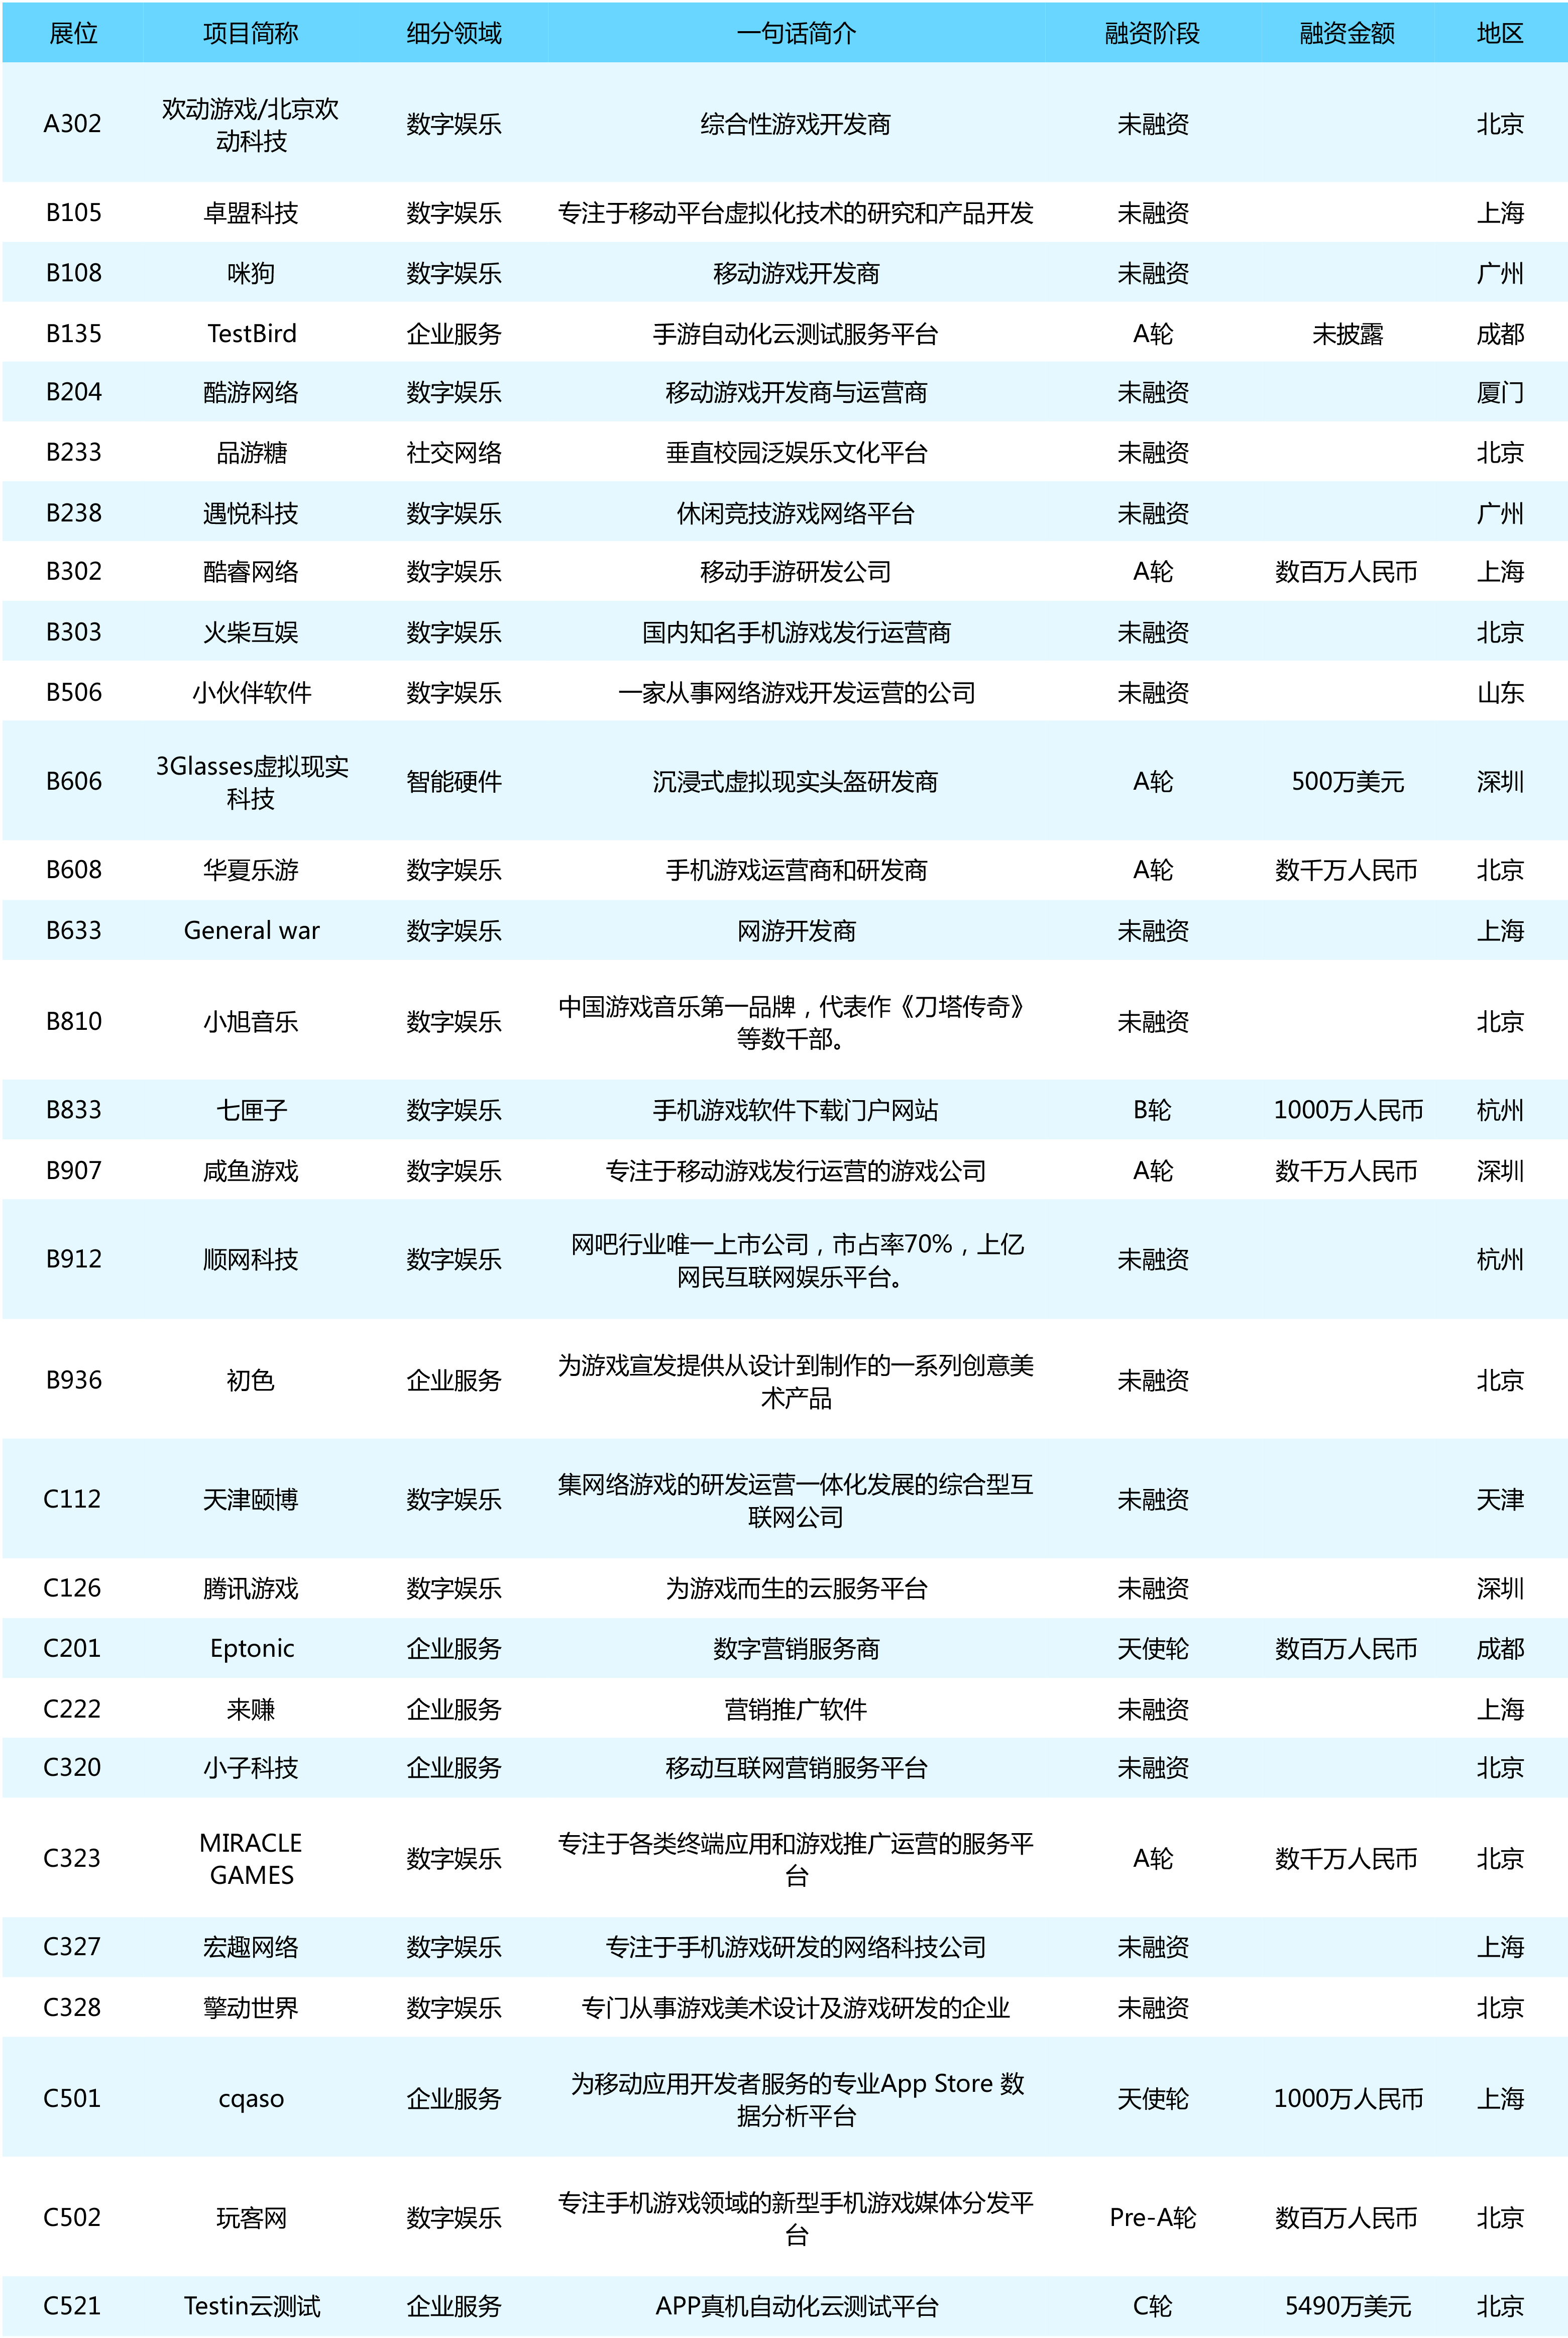 【热点时氪】ChinaJoy/WMGC BTOB展区项目精选，73家公司一键直约